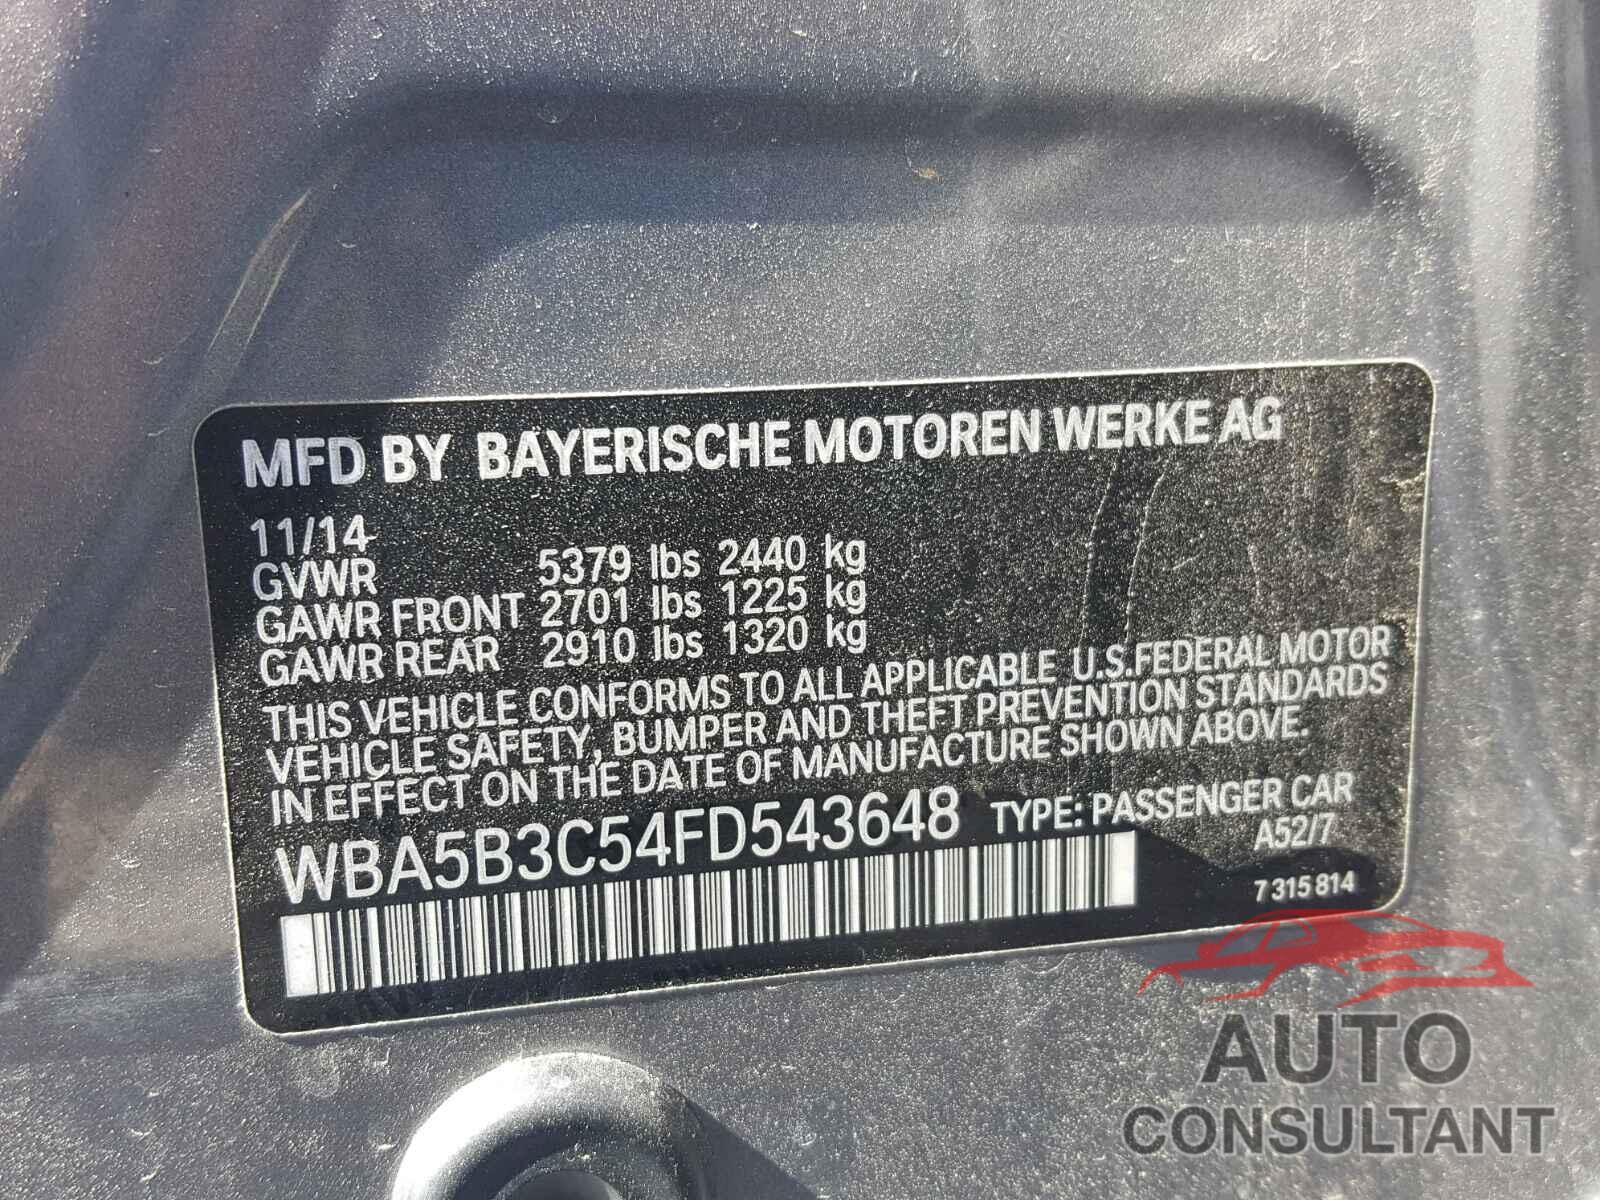 BMW 535 XI 2015 - WBA5B3C54FD543648